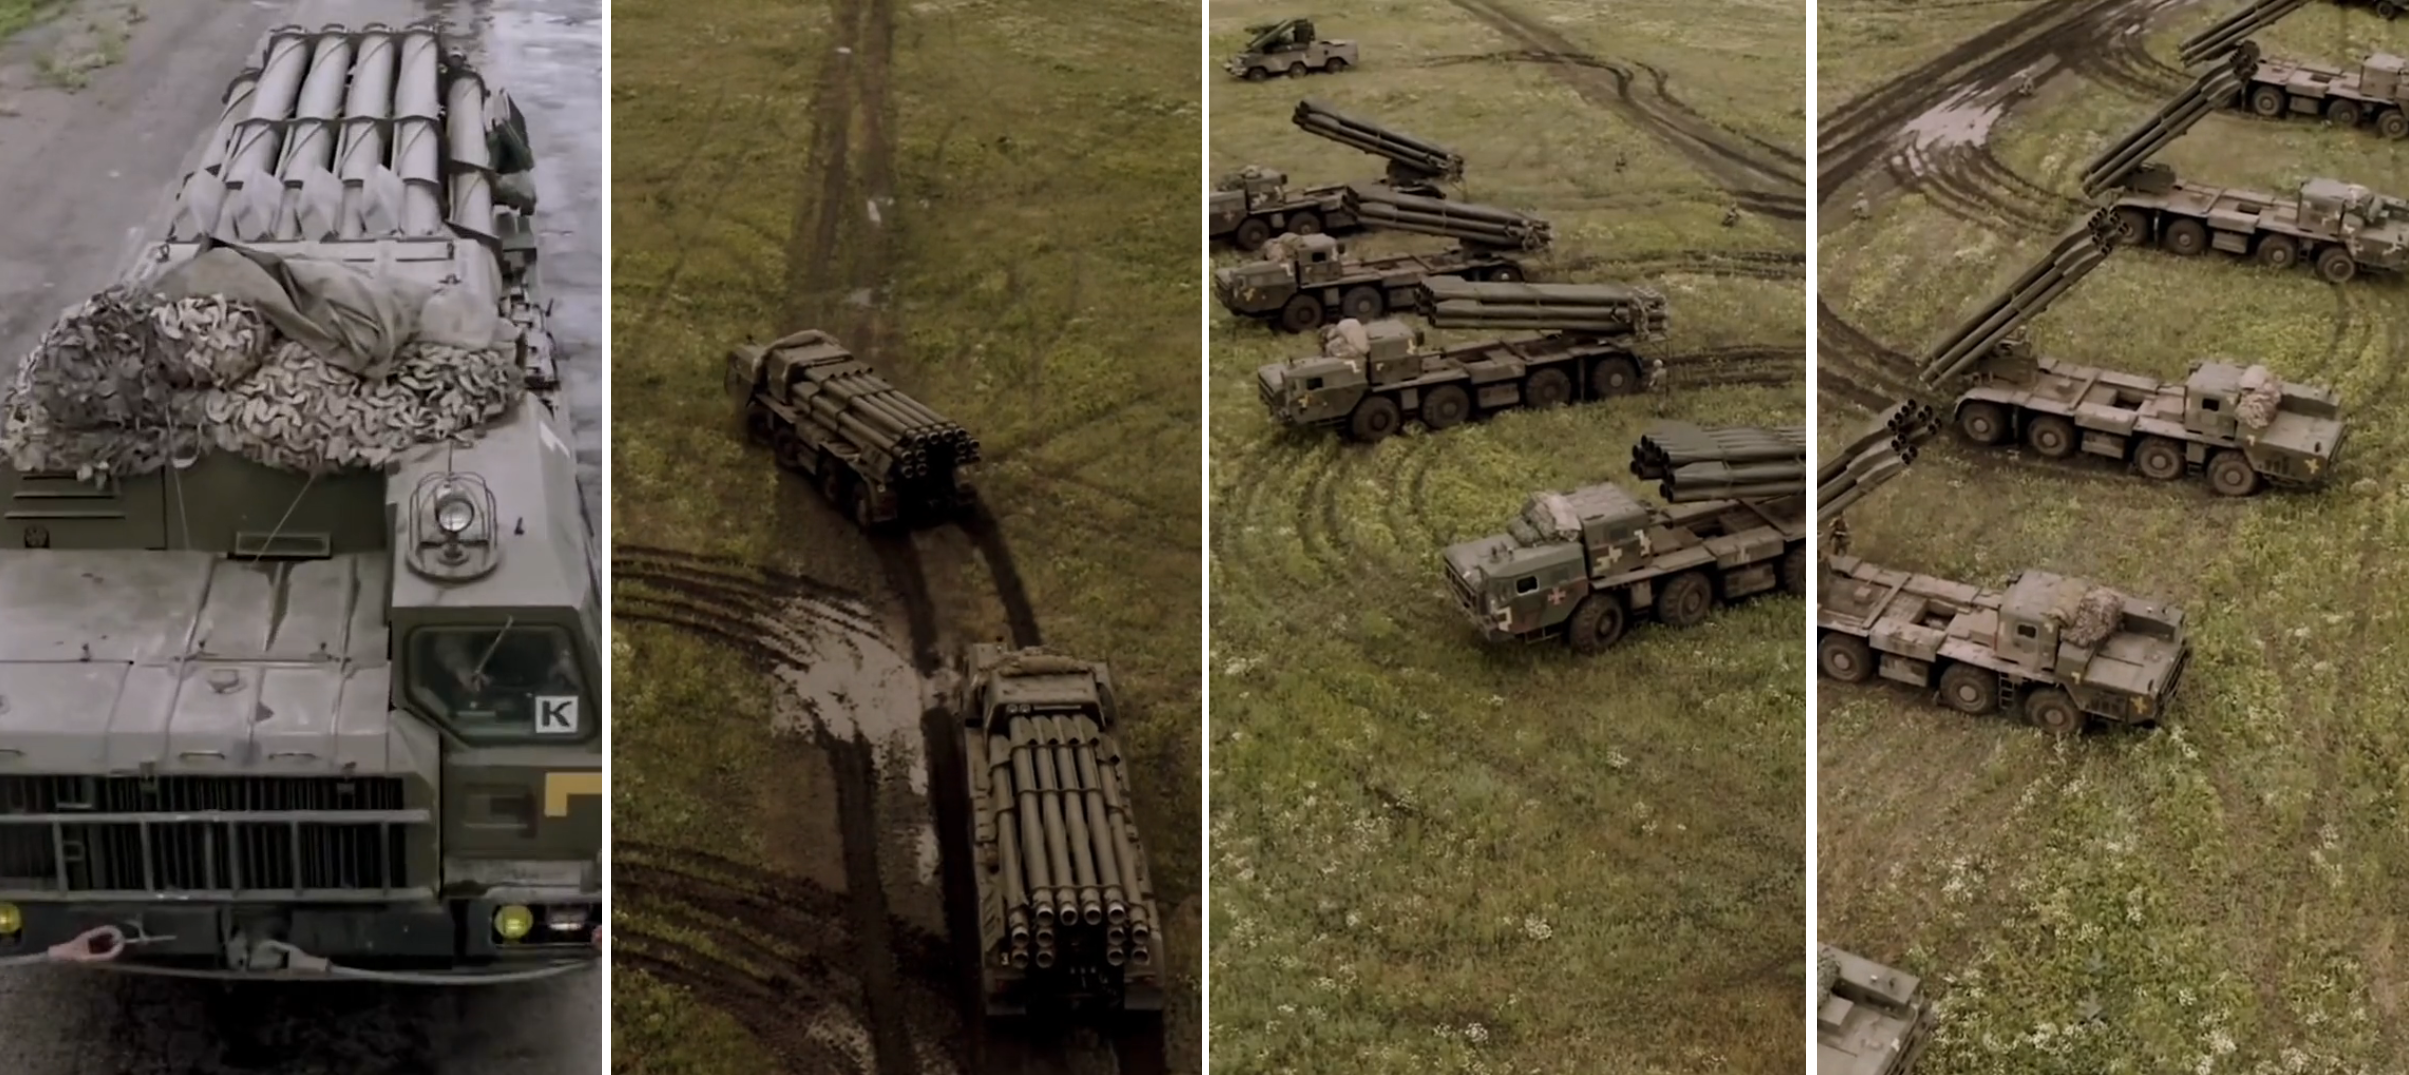 Le forze armate dell'Ucraina hanno mostrato una colonna di sistemi missilistici ucraini "Vilha" con munizioni regolabili da 300 mm